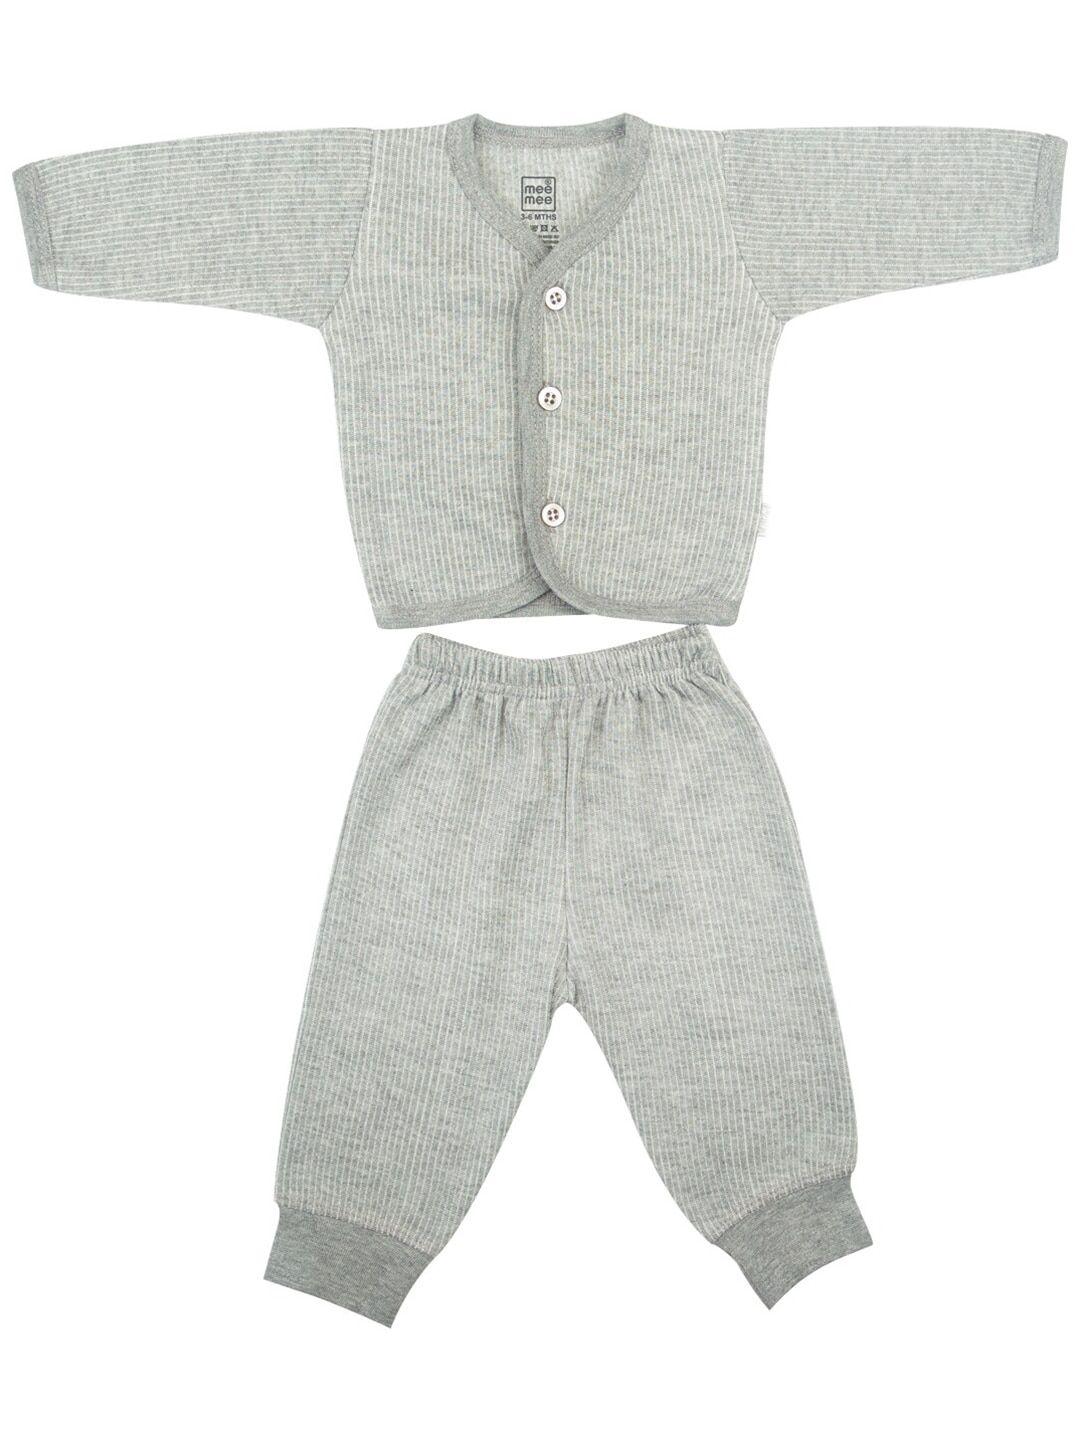 meemee unisex kids grey & white machine wash  t-shirt with pyjamas